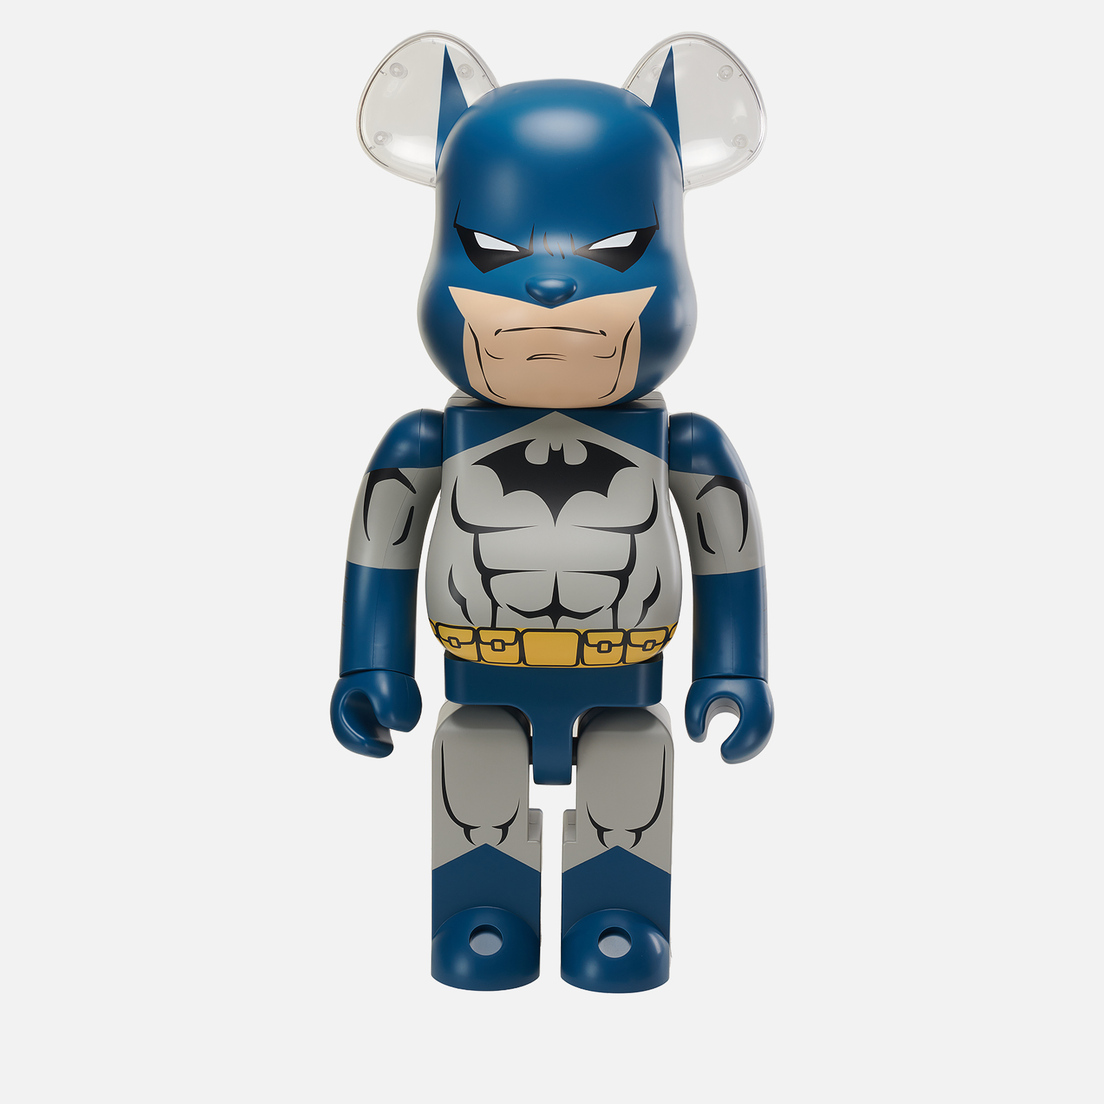 Medicom Toy Игрушка Batman Hush 1000%